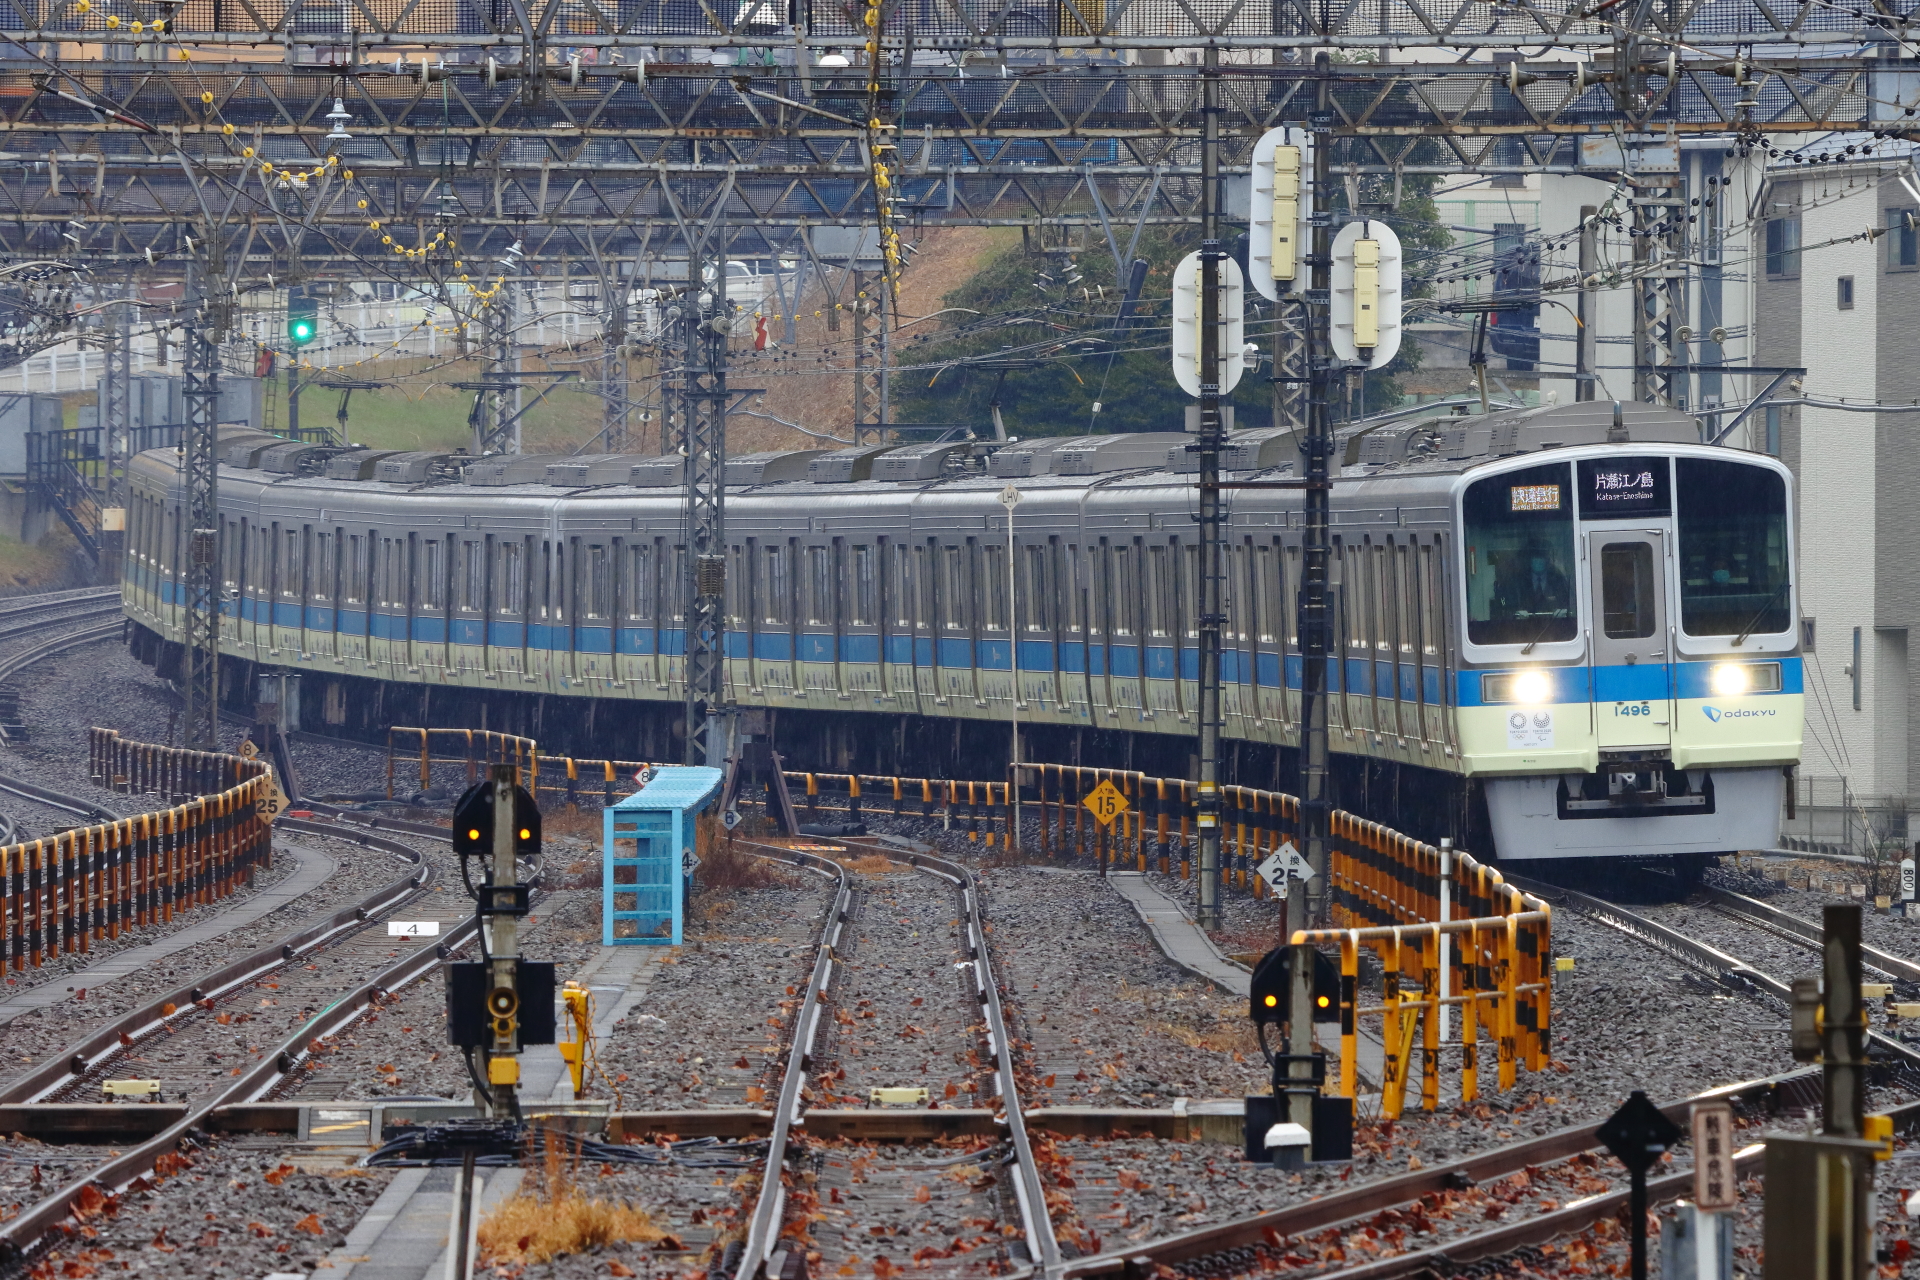 小田急の東京オリンピックのラッピング車両はいつまで走るのか Odapedia 小田急を中心とした鉄道に関するブログメディア